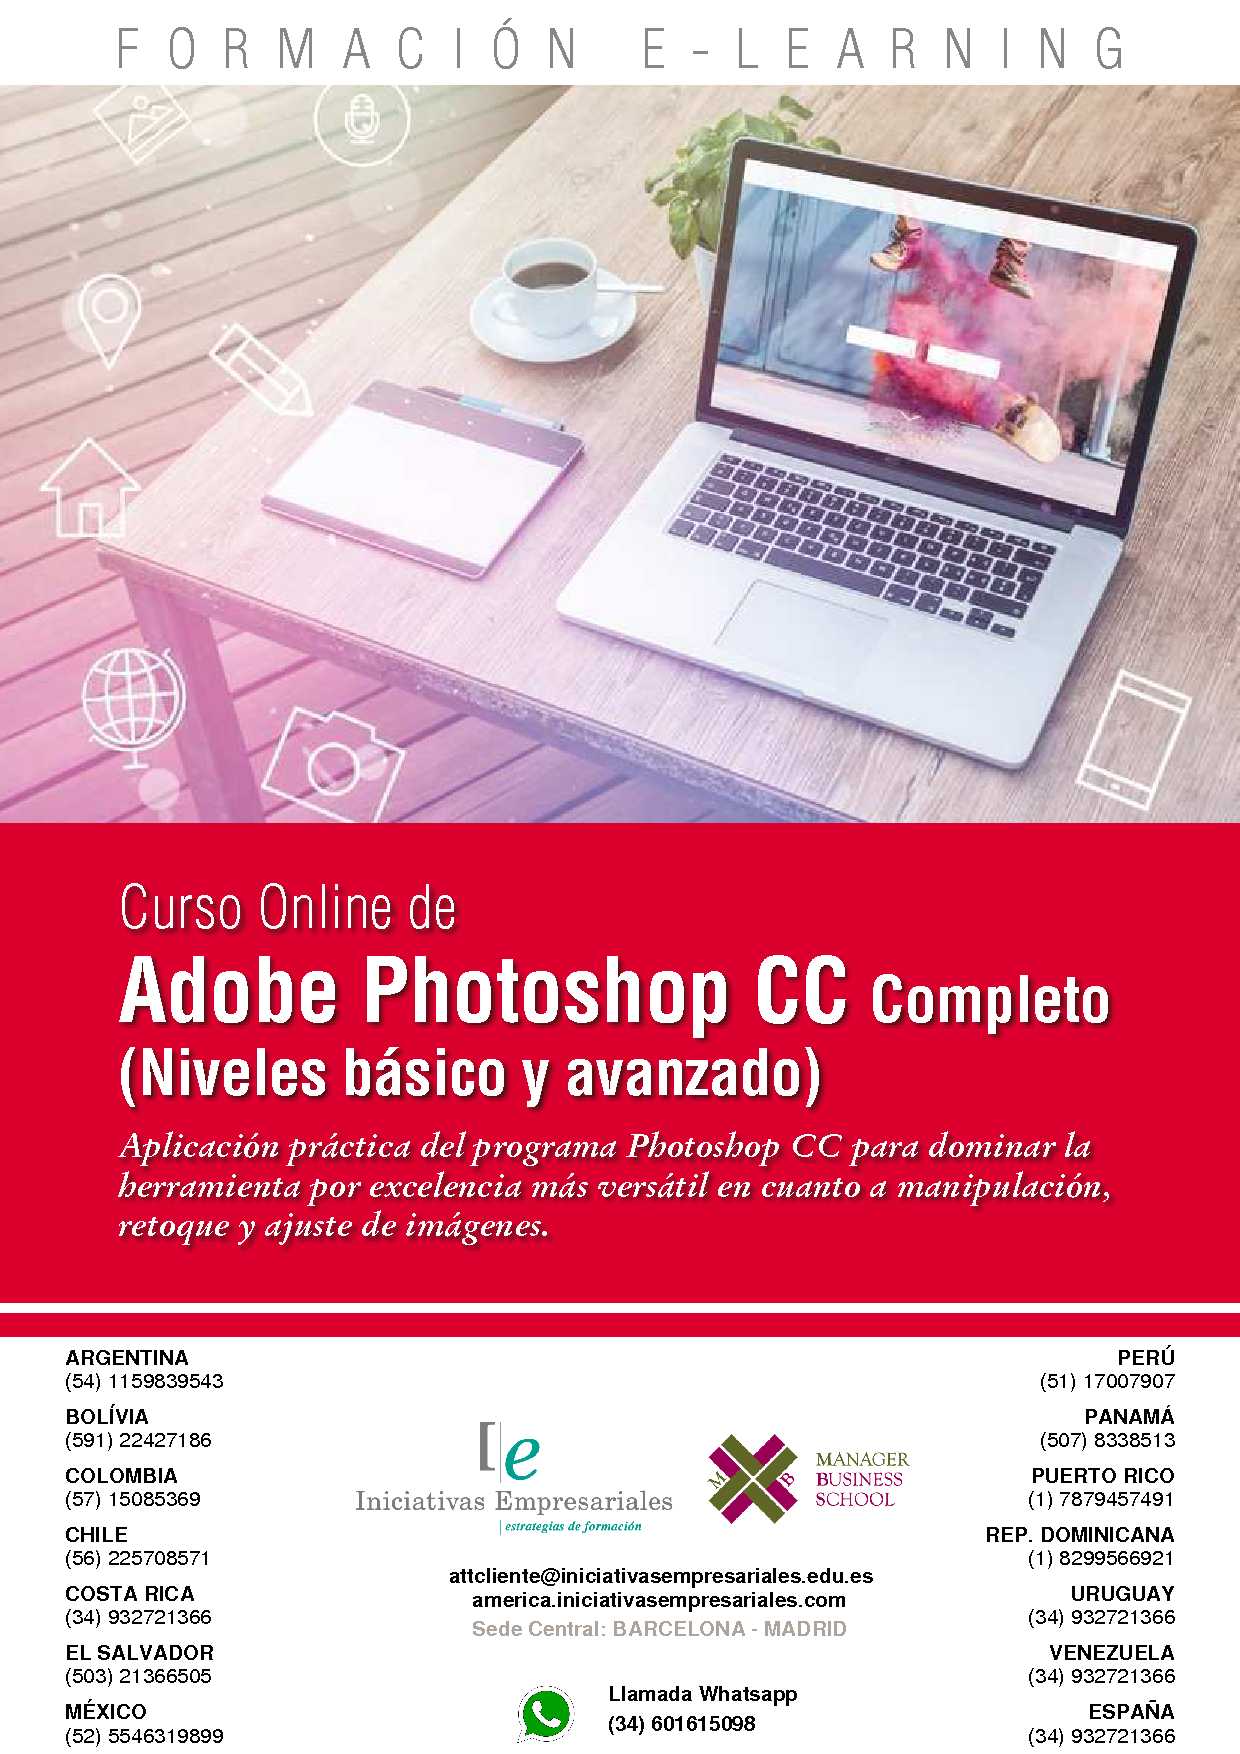 Adobe Photoshop CC Completo (Niveles básico y avanzado)